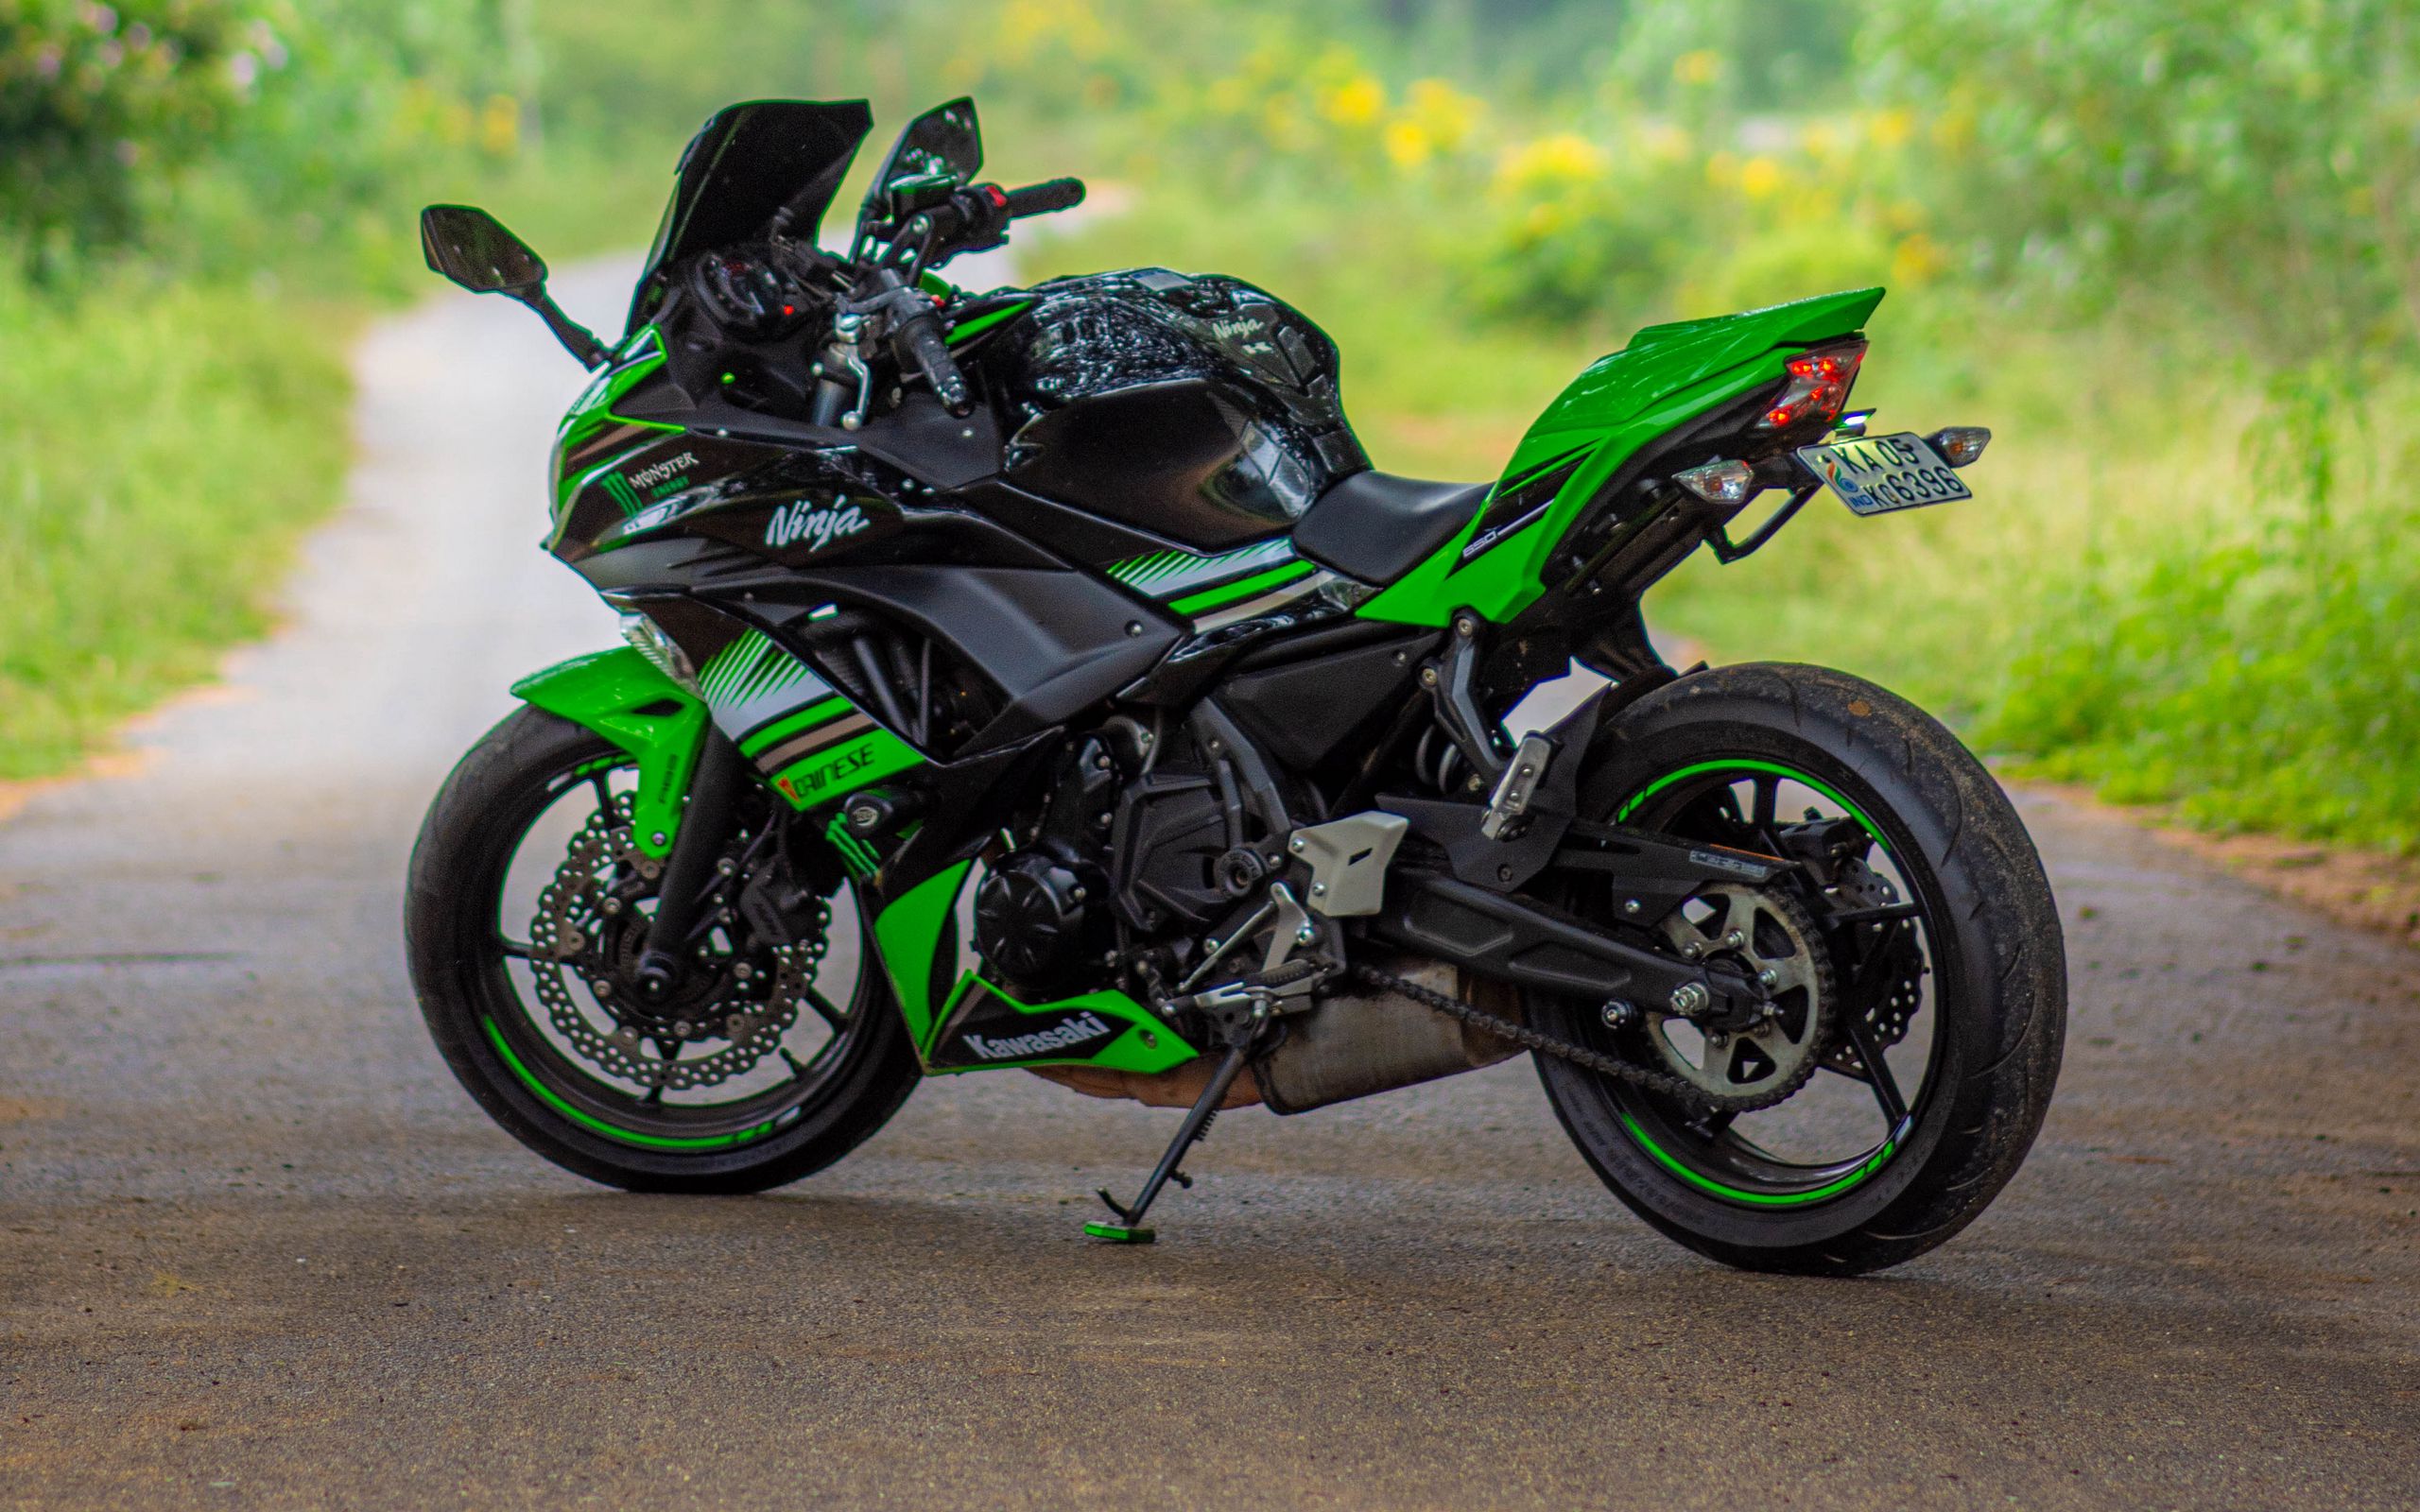 2560x1600 Обои kawasaki ninja 650, kawasaki, мотоцикл, зеленый